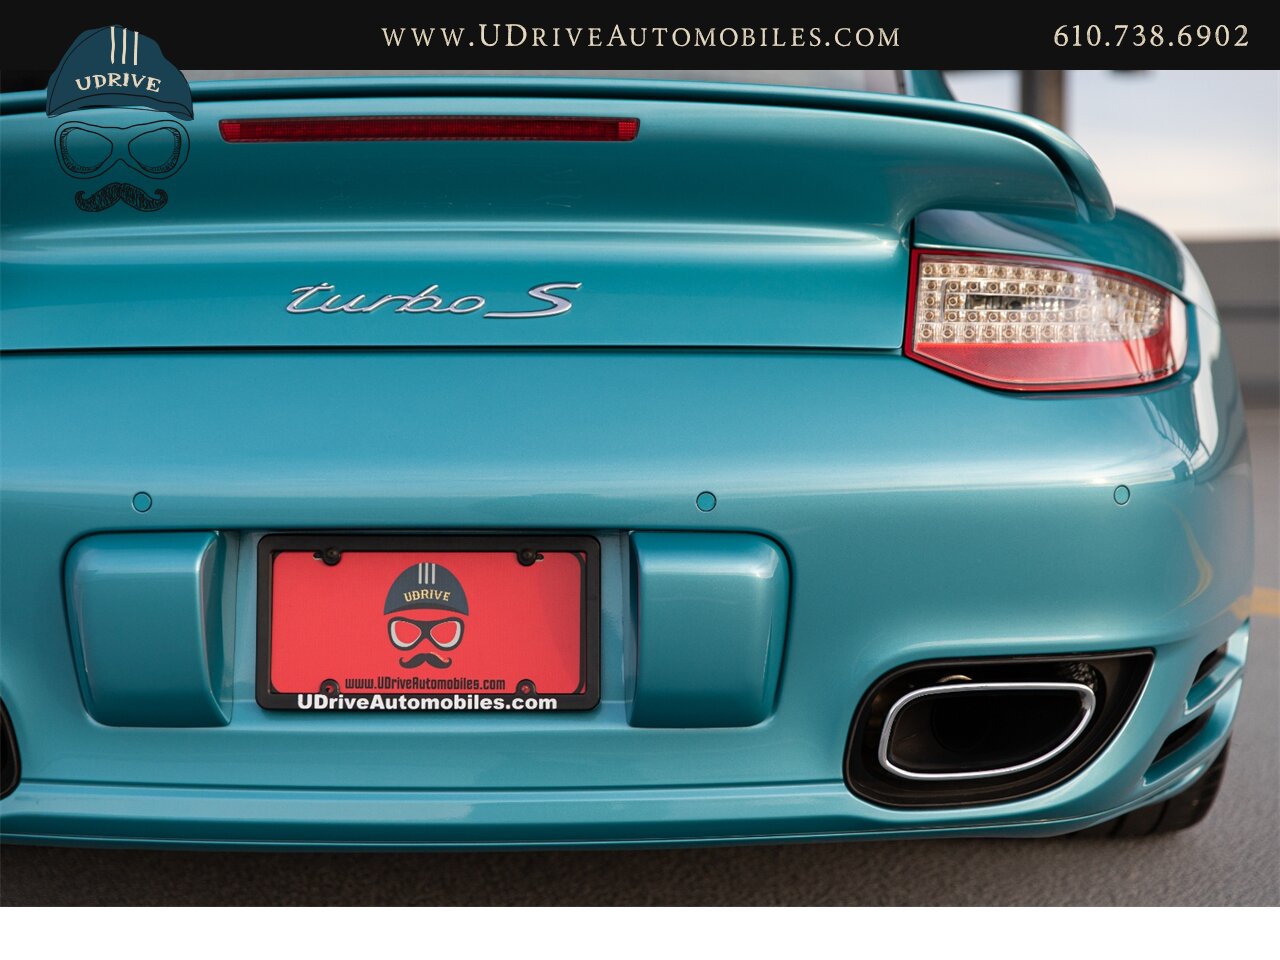 2012 Porsche 911 Turbo S 997.2 RARE Ipanema Blue 13k Miles  Vent Sts Carbon Fiber Pntd Exter Pkg Blk Centerlock Whls $173k MSRP - Photo 20 - West Chester, PA 19382